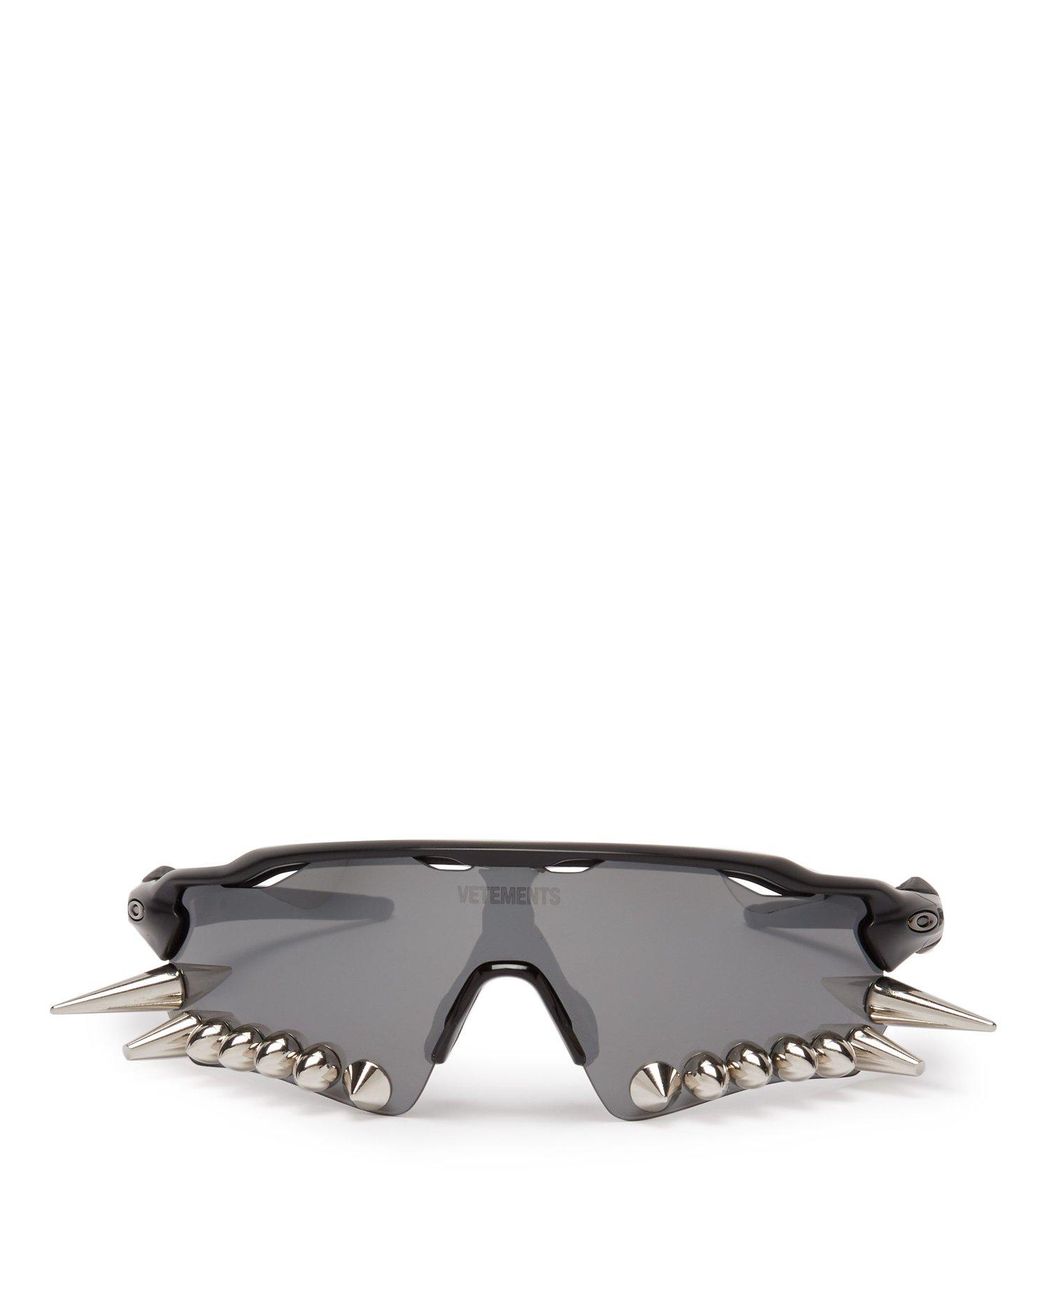 zebra mischief adjust Vetements X Oakley Spikes 400 Sunglasses in Black | Lyst